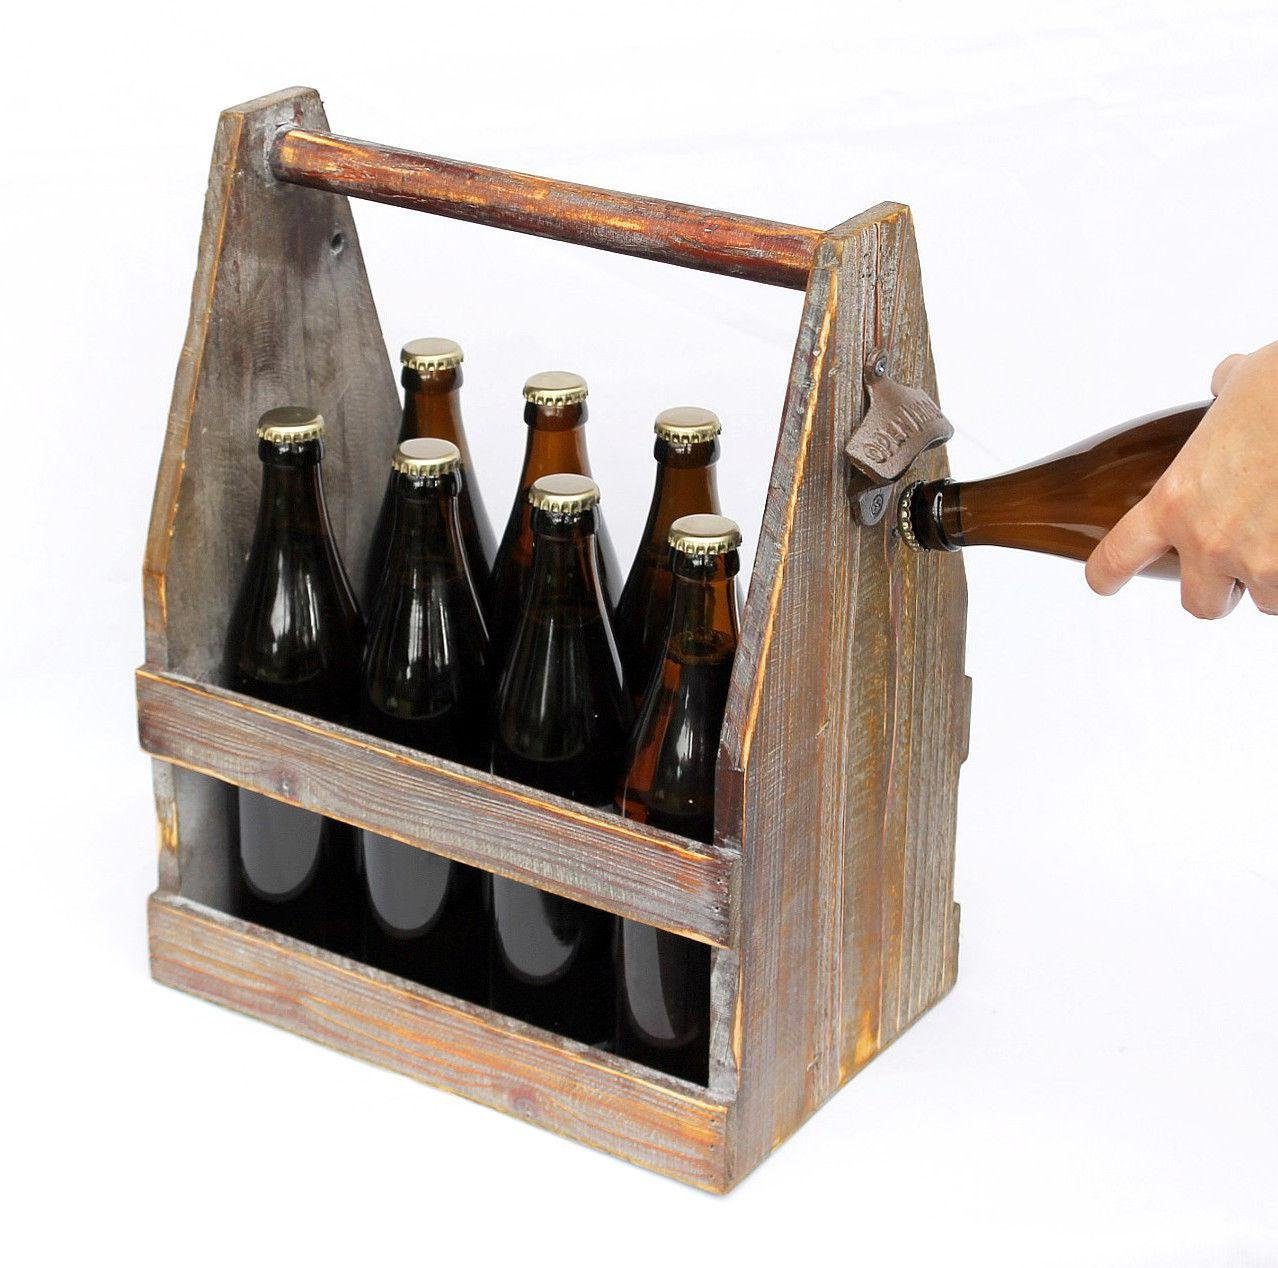 DanDiBo Flaschenkorb 5087 Holz aus cm Flaschenträger Bierkiste 38 mit Flaschenöffner Bierträger